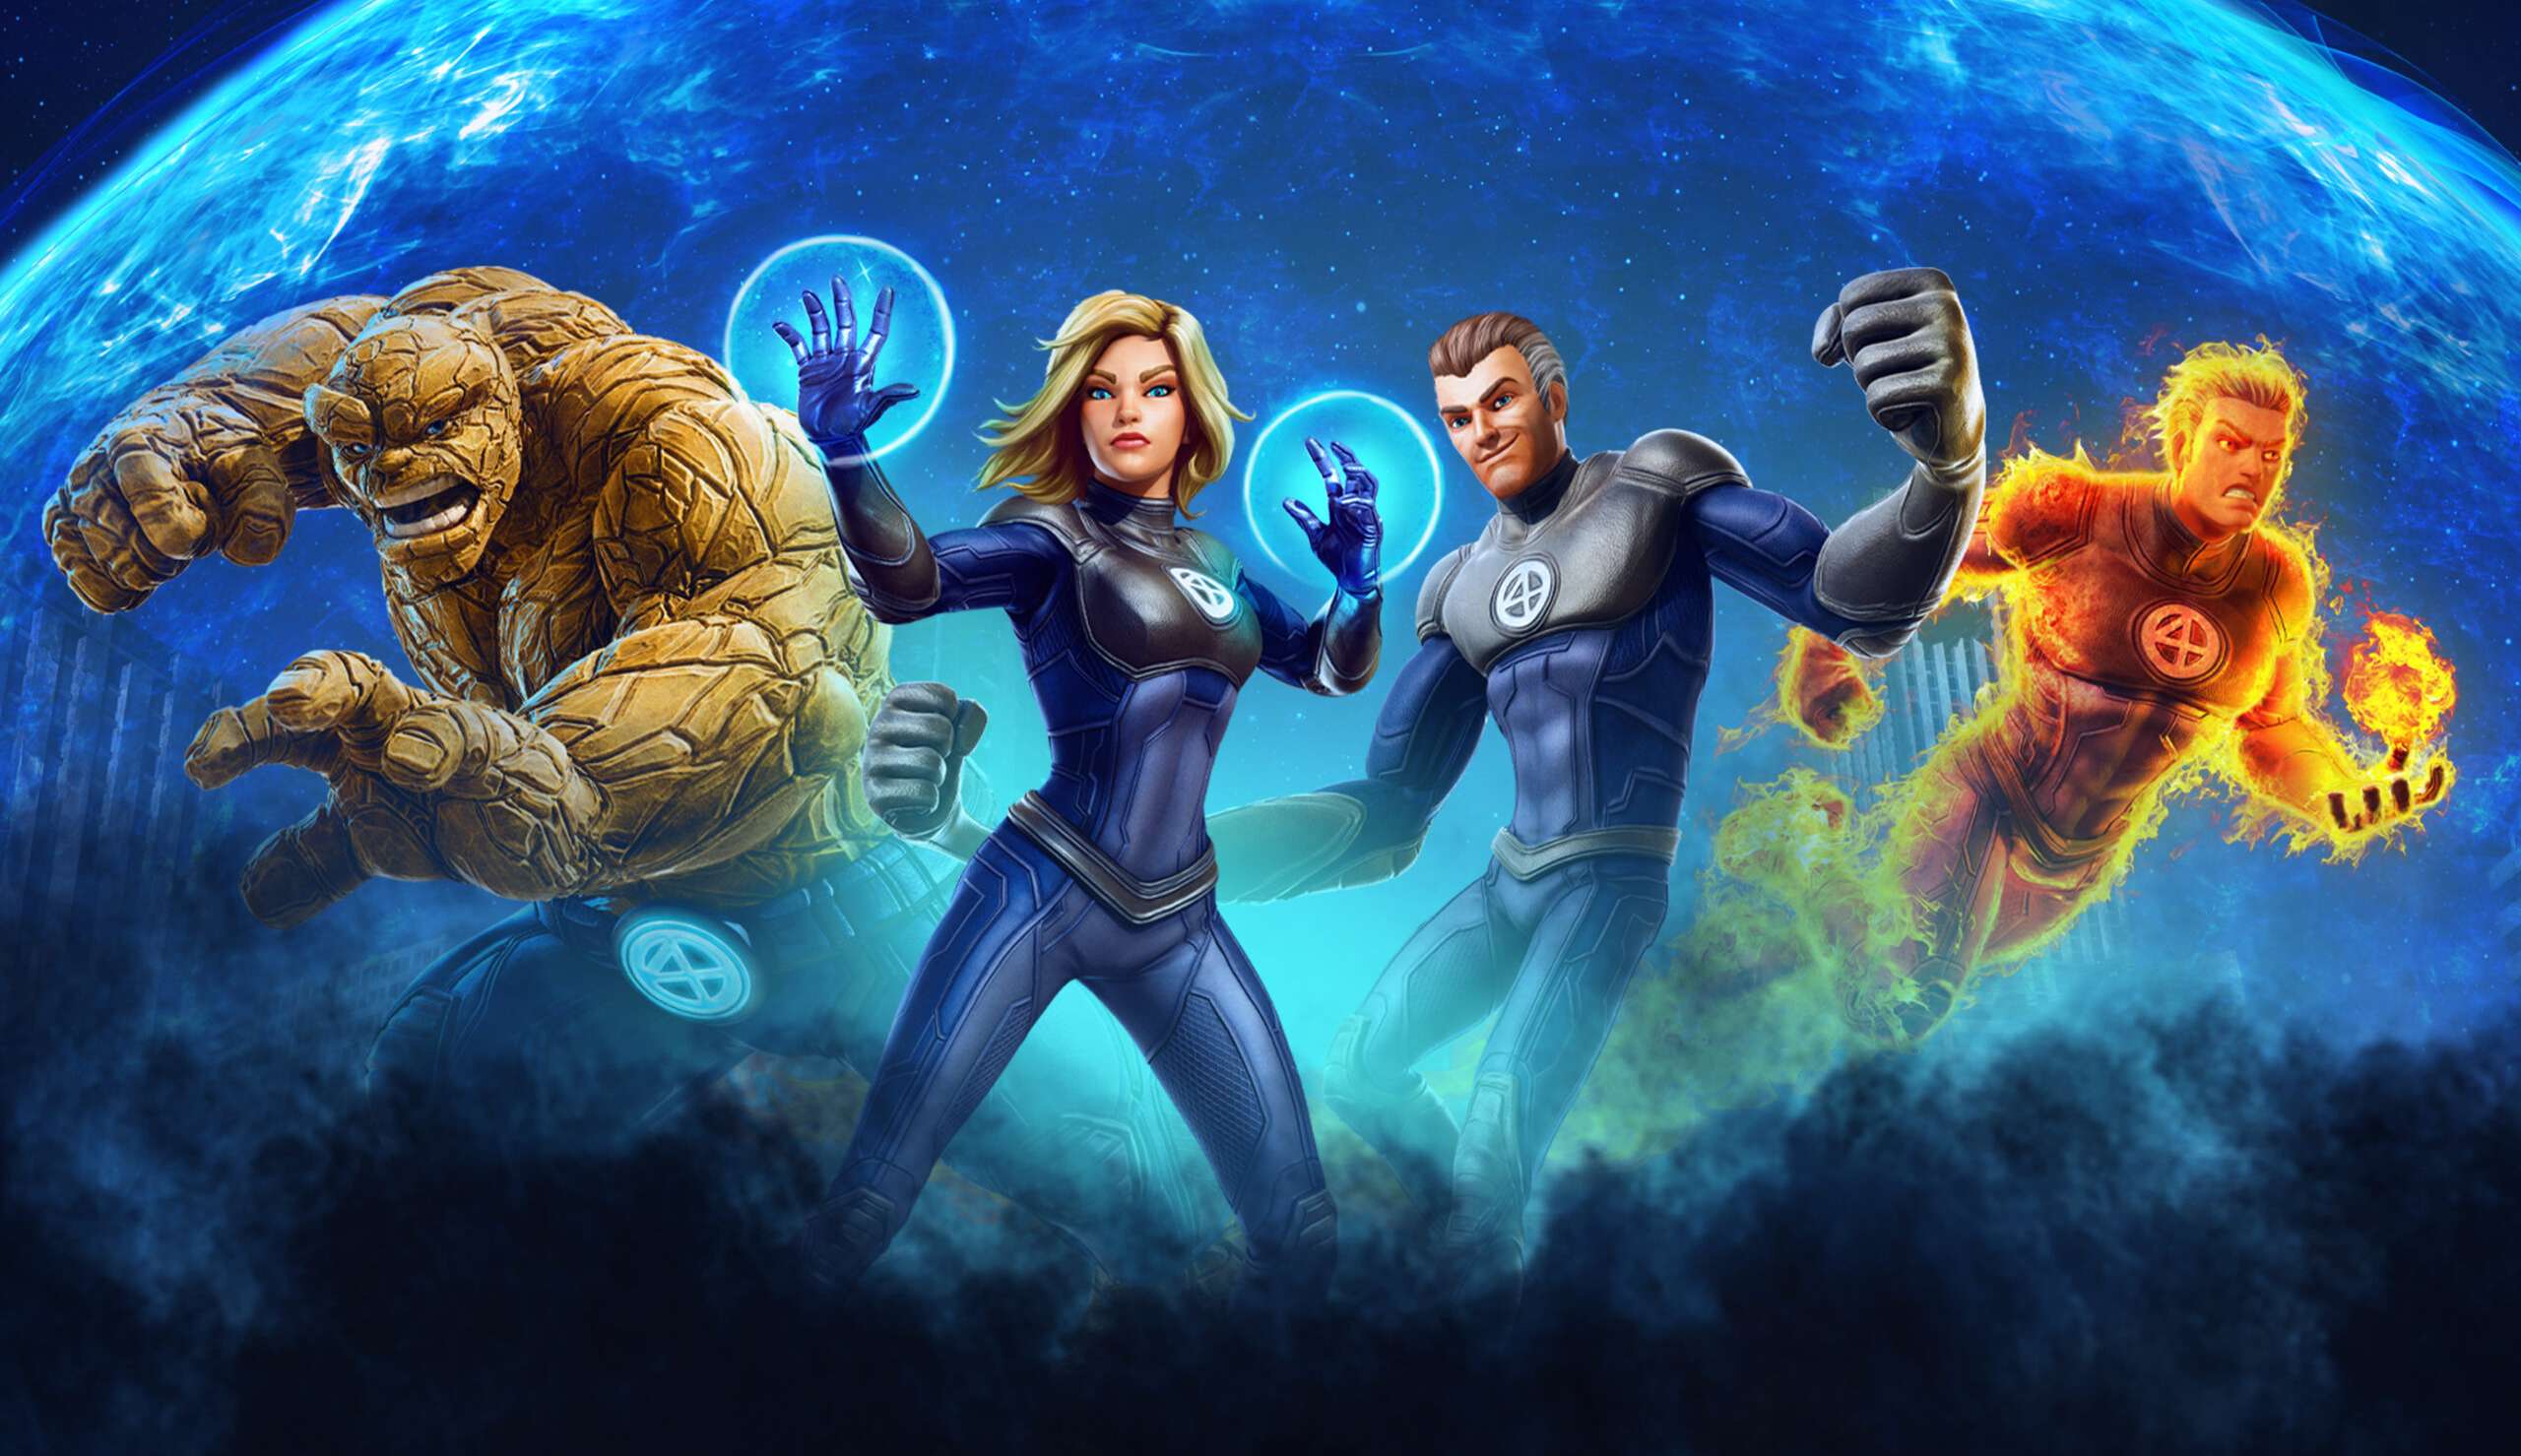 Fantastic Four wins Josh Friedman's Script!